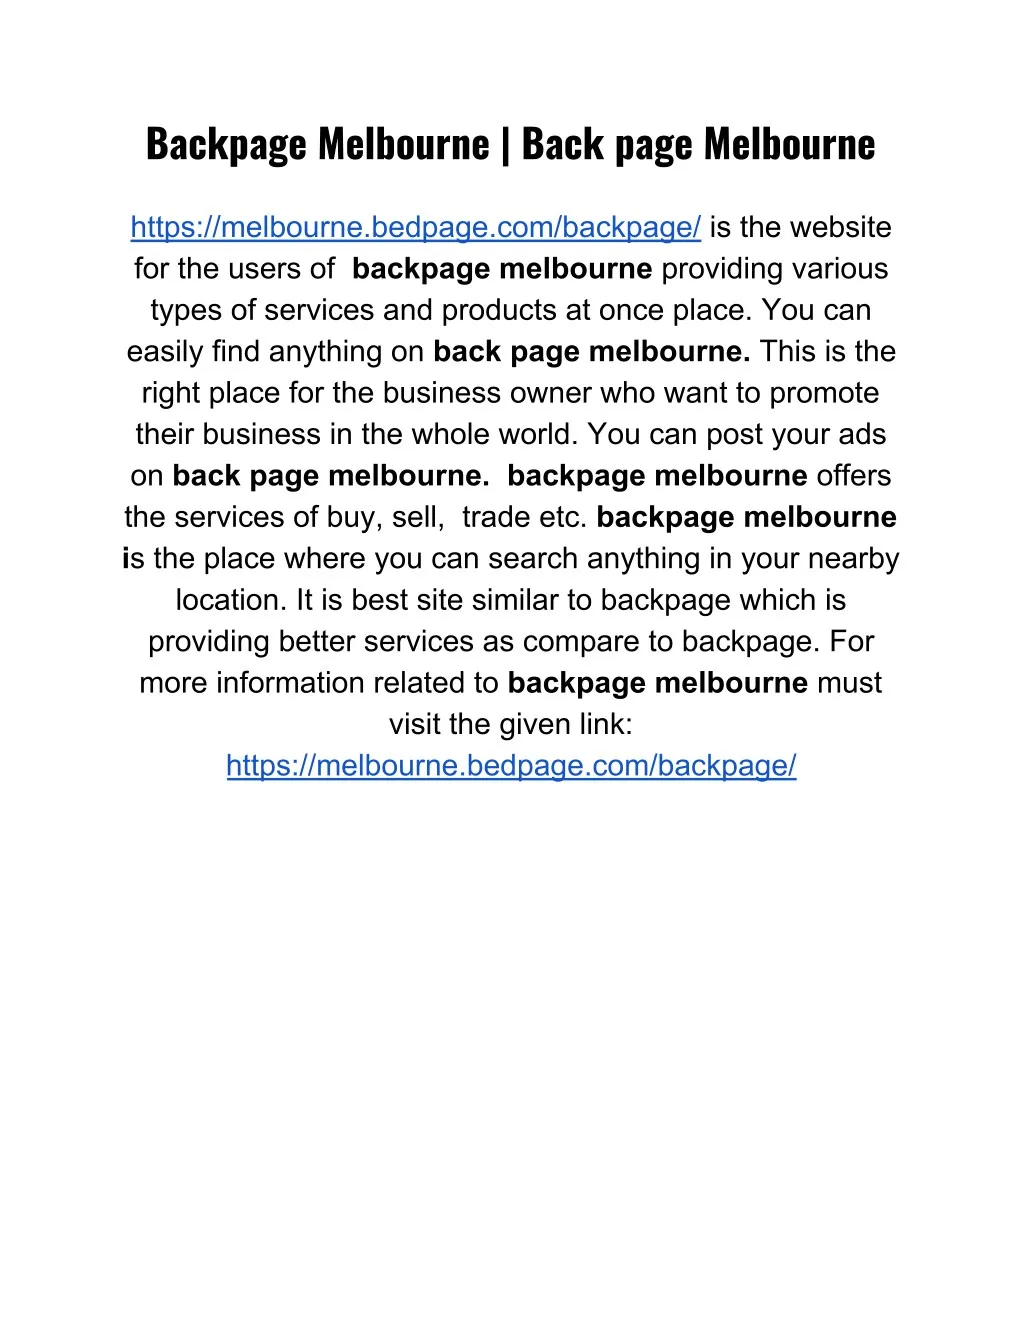 backpage melbourne back page melbourne https